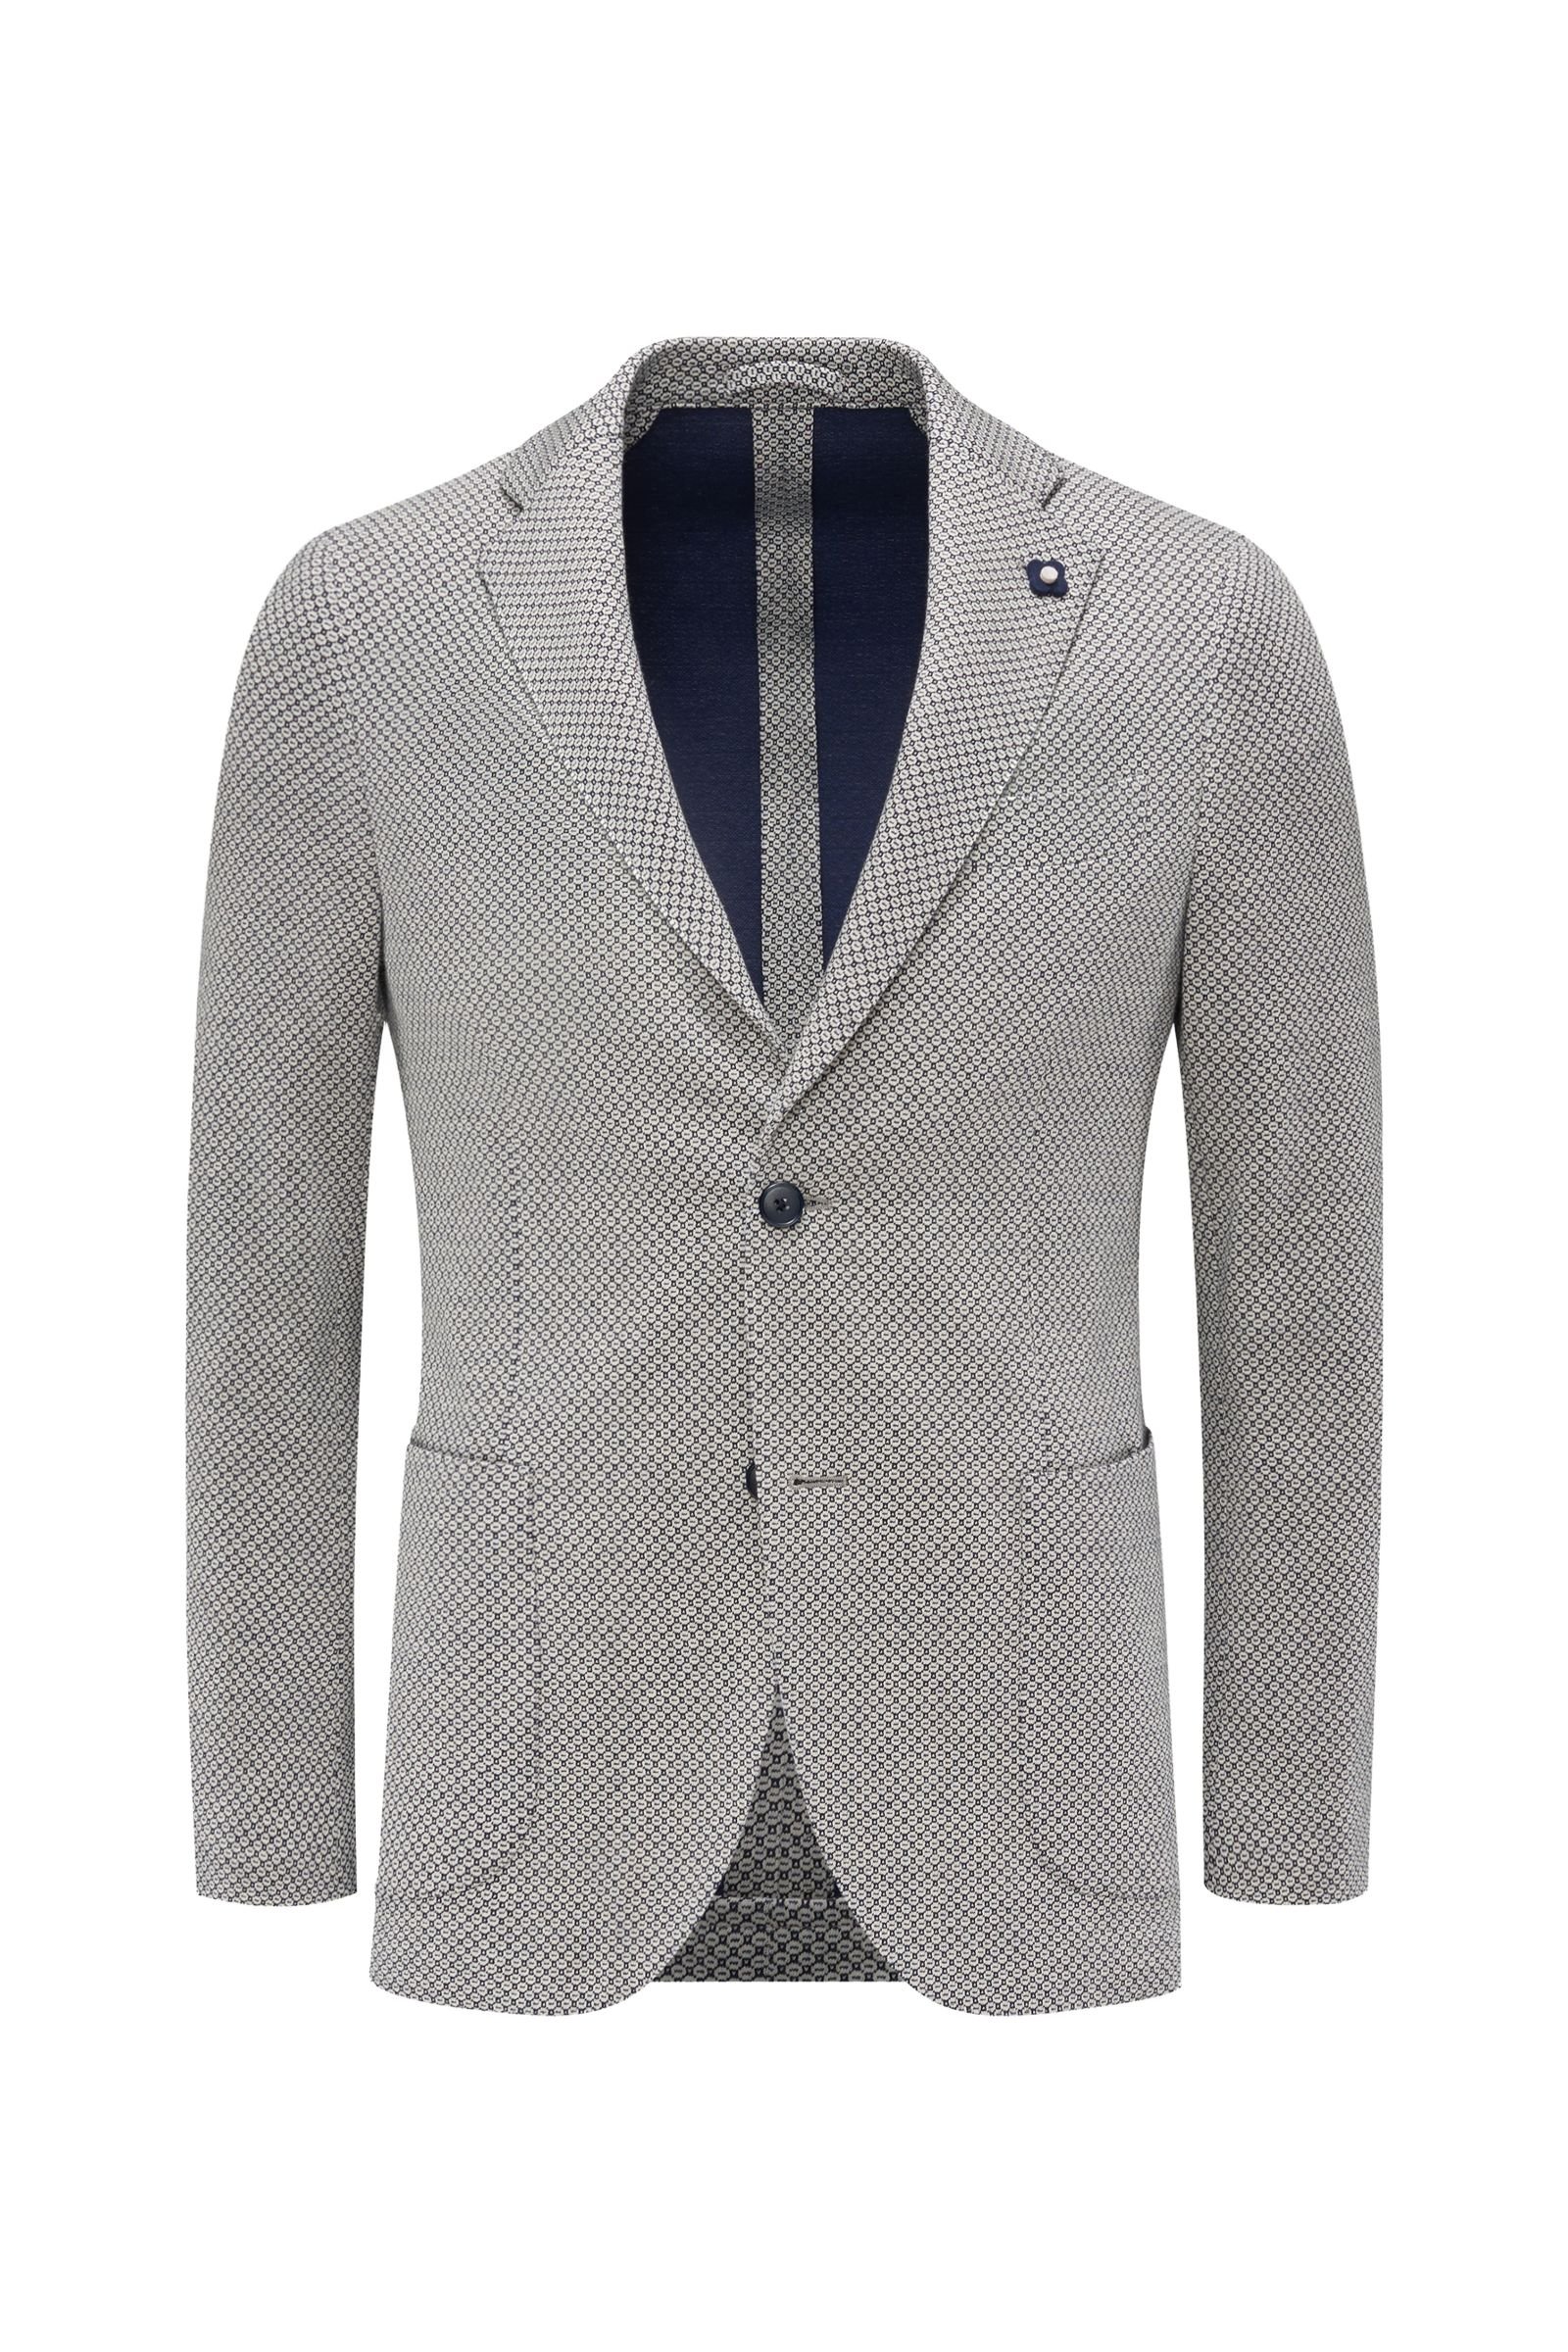 Jersey jacket off-white/navy patterned